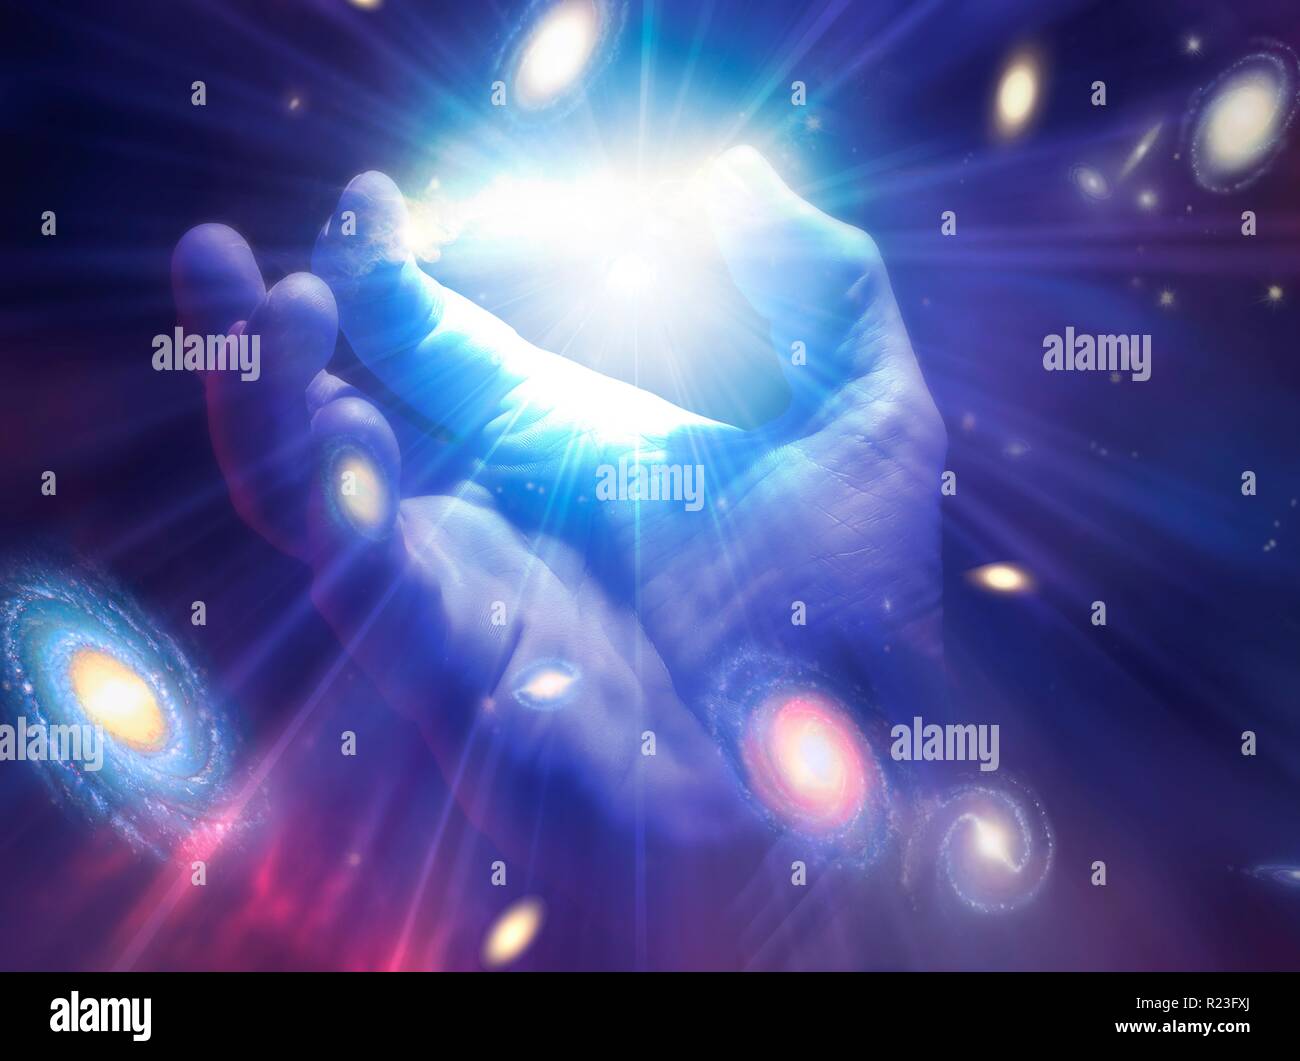 Ilustración conceptual de la creación. Aparece una mano con los rayos de luz y las galaxias que emanan de ella. Foto de stock